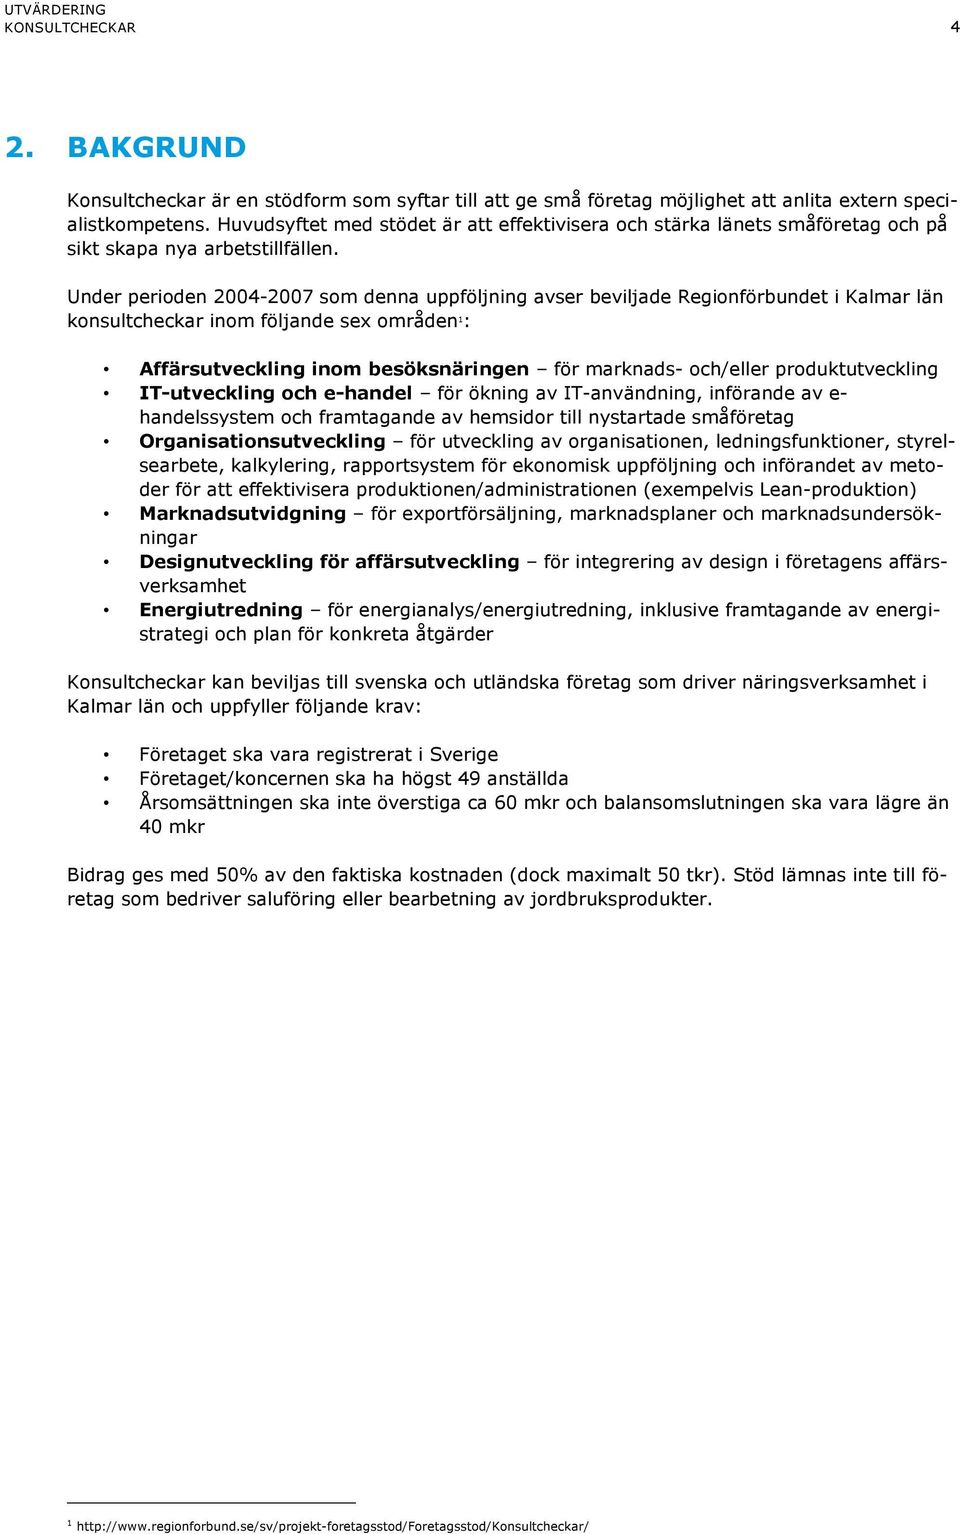 Under perioden 2004-2007 som denna uppföljning avser beviljade Regionförbundet i Kalmar län konsultcheckar inom följande sex områden 1 : Affärsutveckling inom besöksnäringen för marknads- och/eller